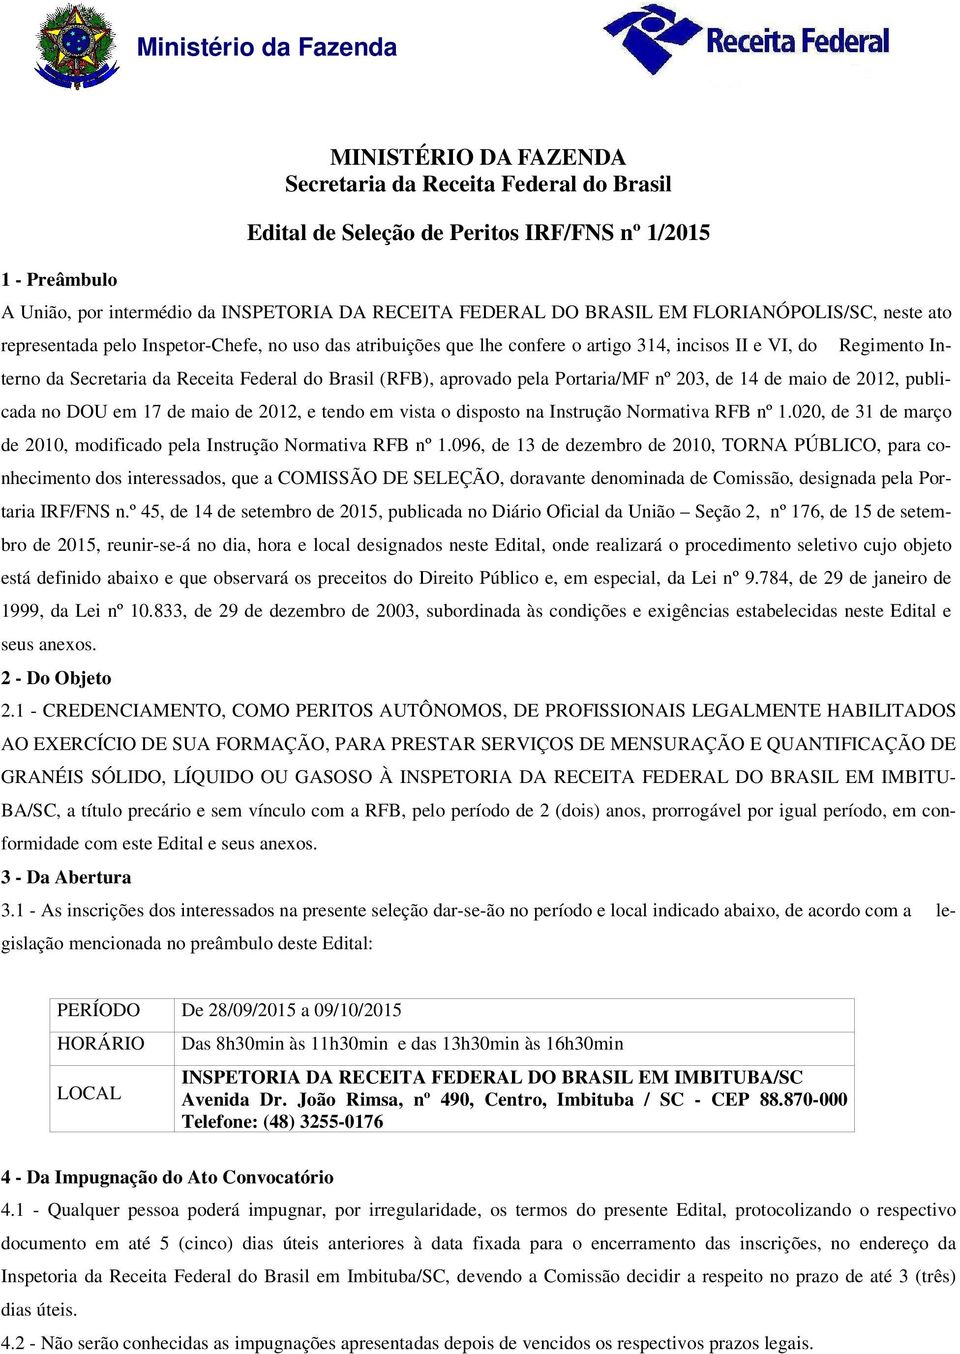 (RFB), aprovado pela Portaria/MF nº 203, de 14 de maio de 2012, publicada no DOU em 17 de maio de 2012, e tendo em vista o disposto na Instrução Normativa RFB nº 1.